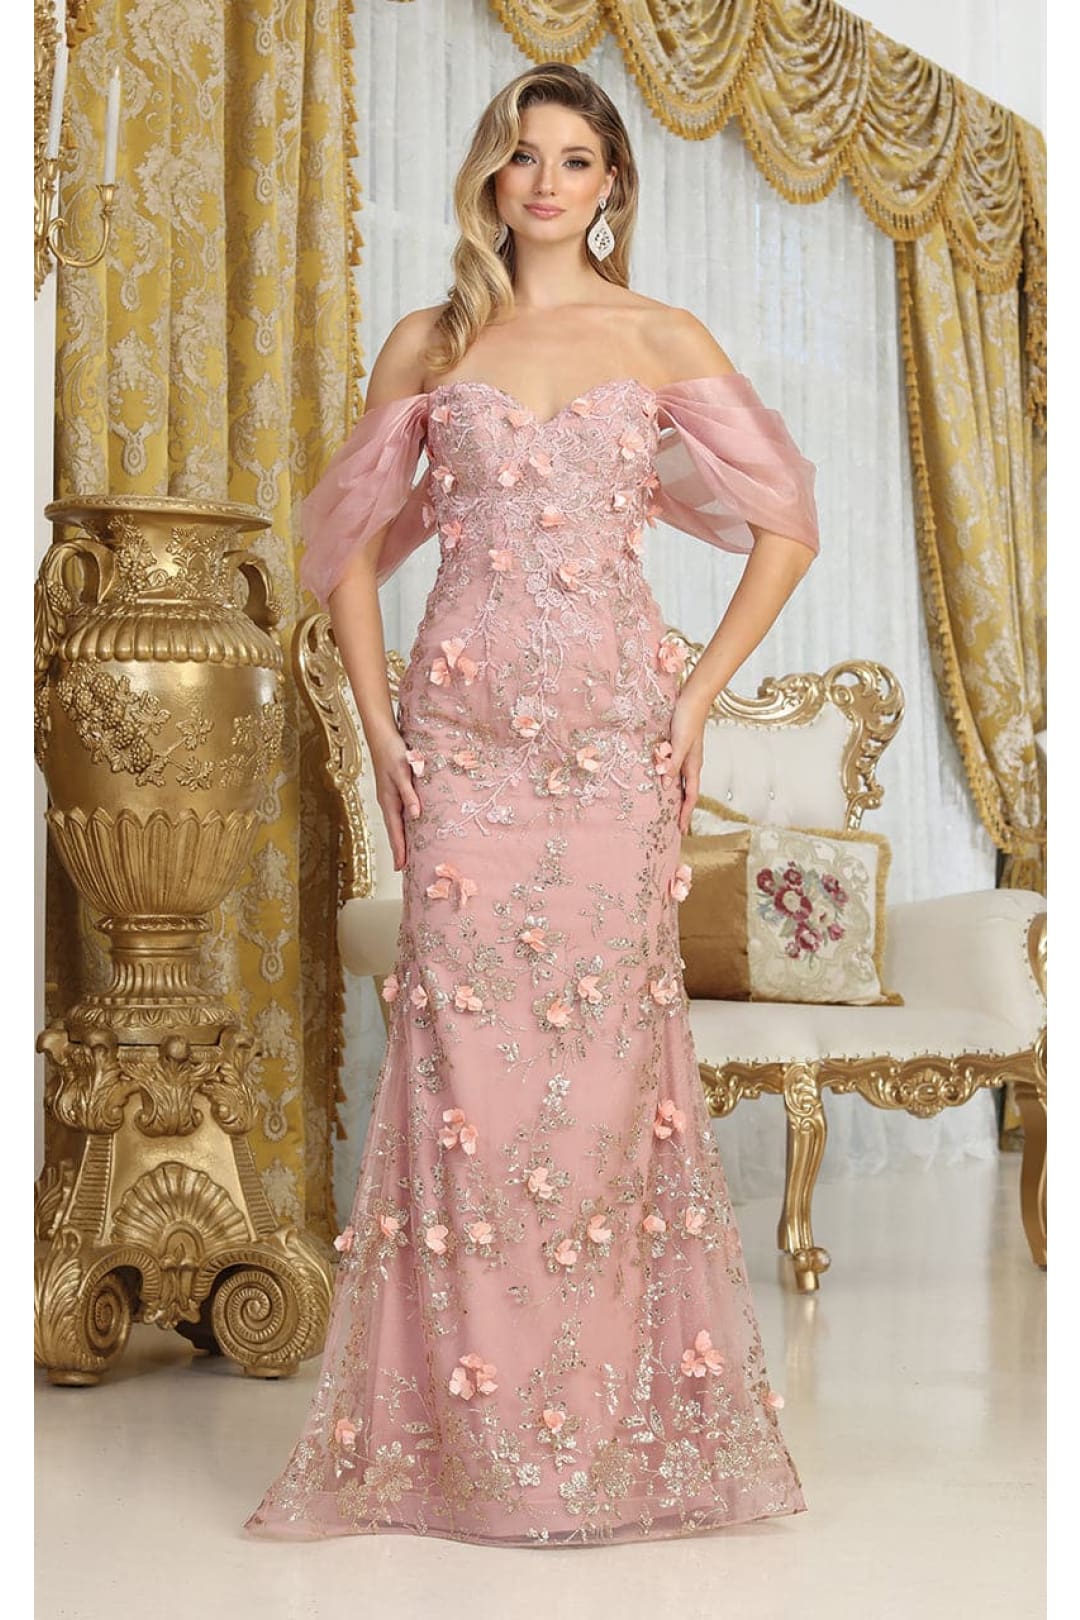 Royal Queen RQ8037 Off Shoulder 3D Floral Applique Red Carpet Dress - ROSE GOLD / 4 - Dress